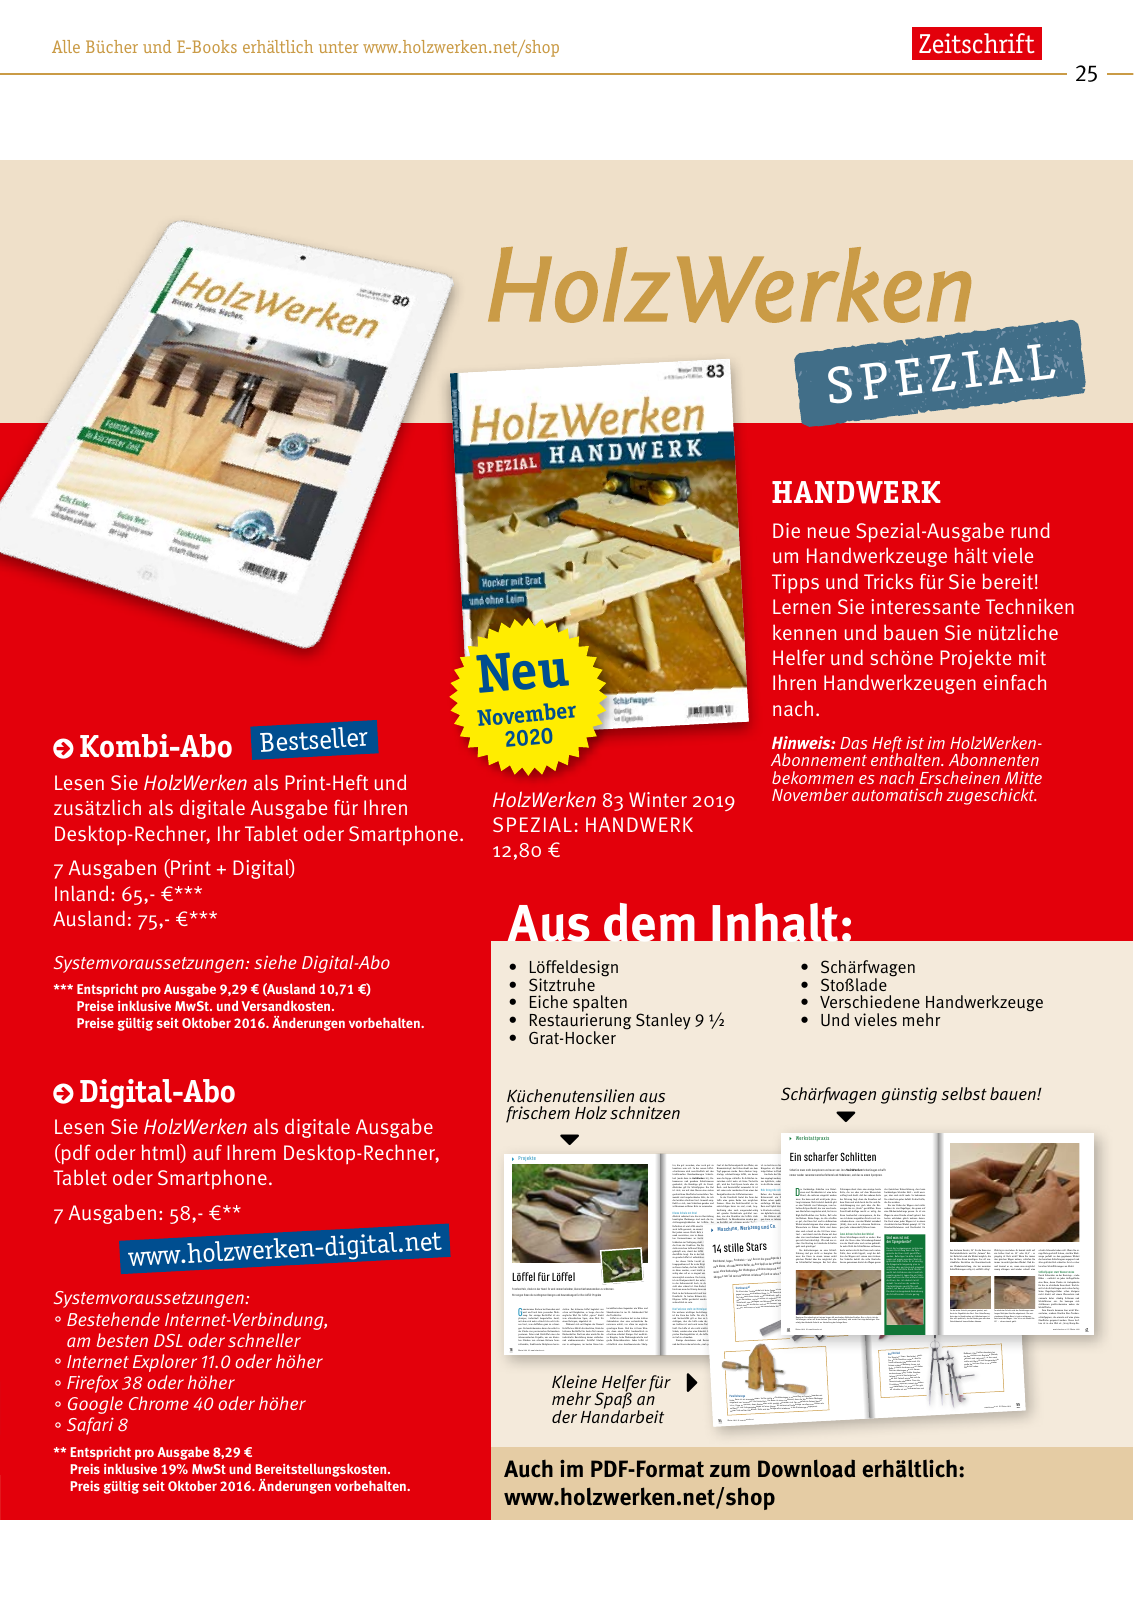 Vorschau HolzWerken Katalog 2020 Seite 25